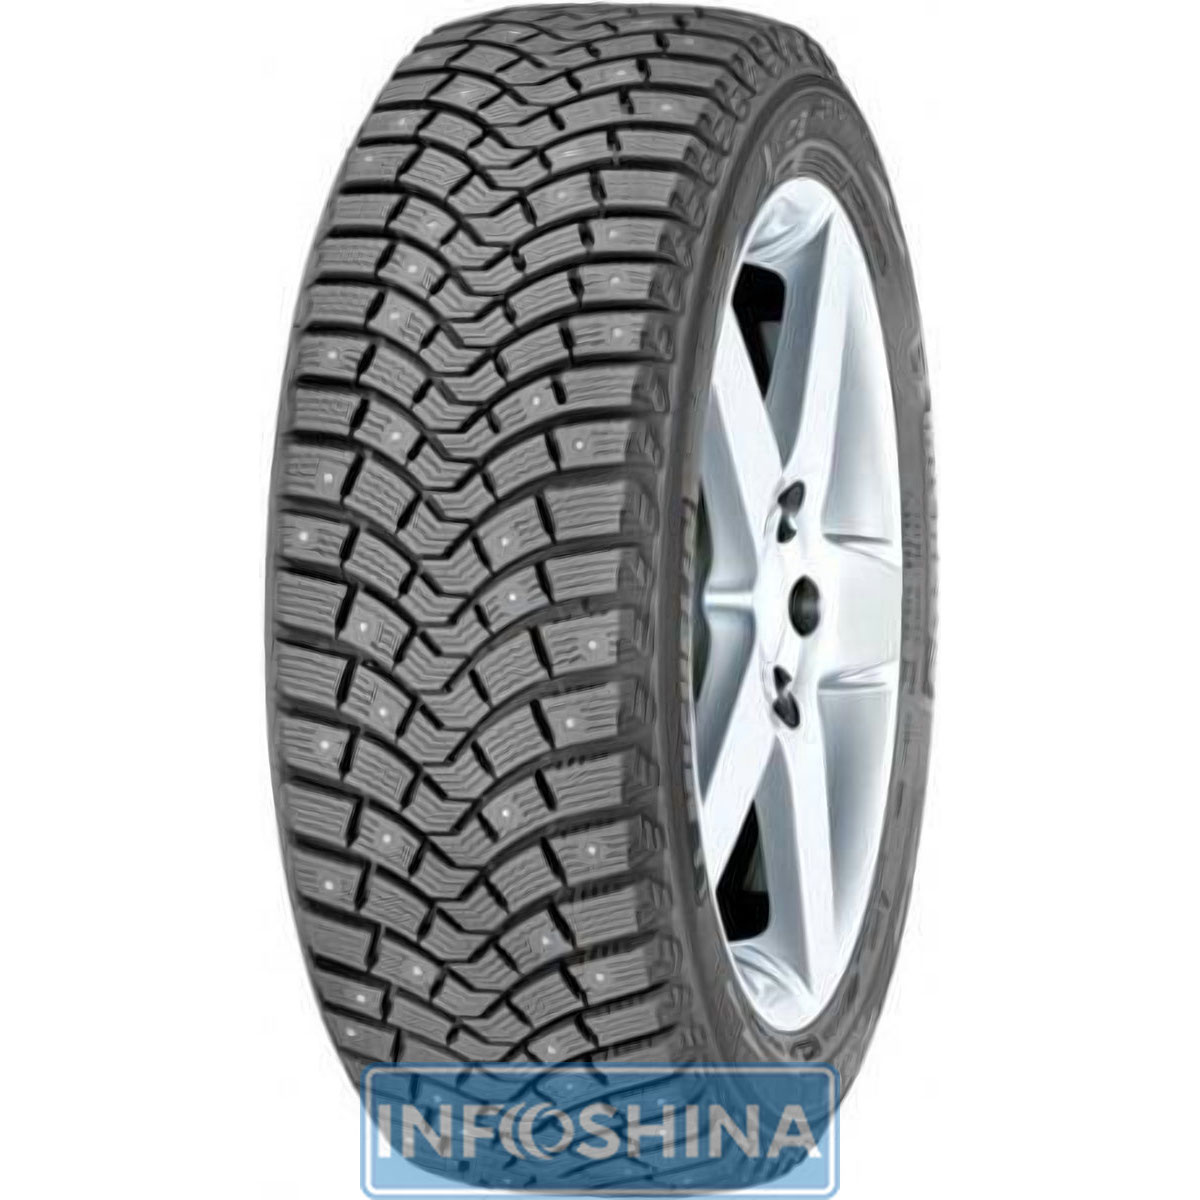 Купить шины Michelin X-Ice North XIN2 185/60 R15 88T (шип)